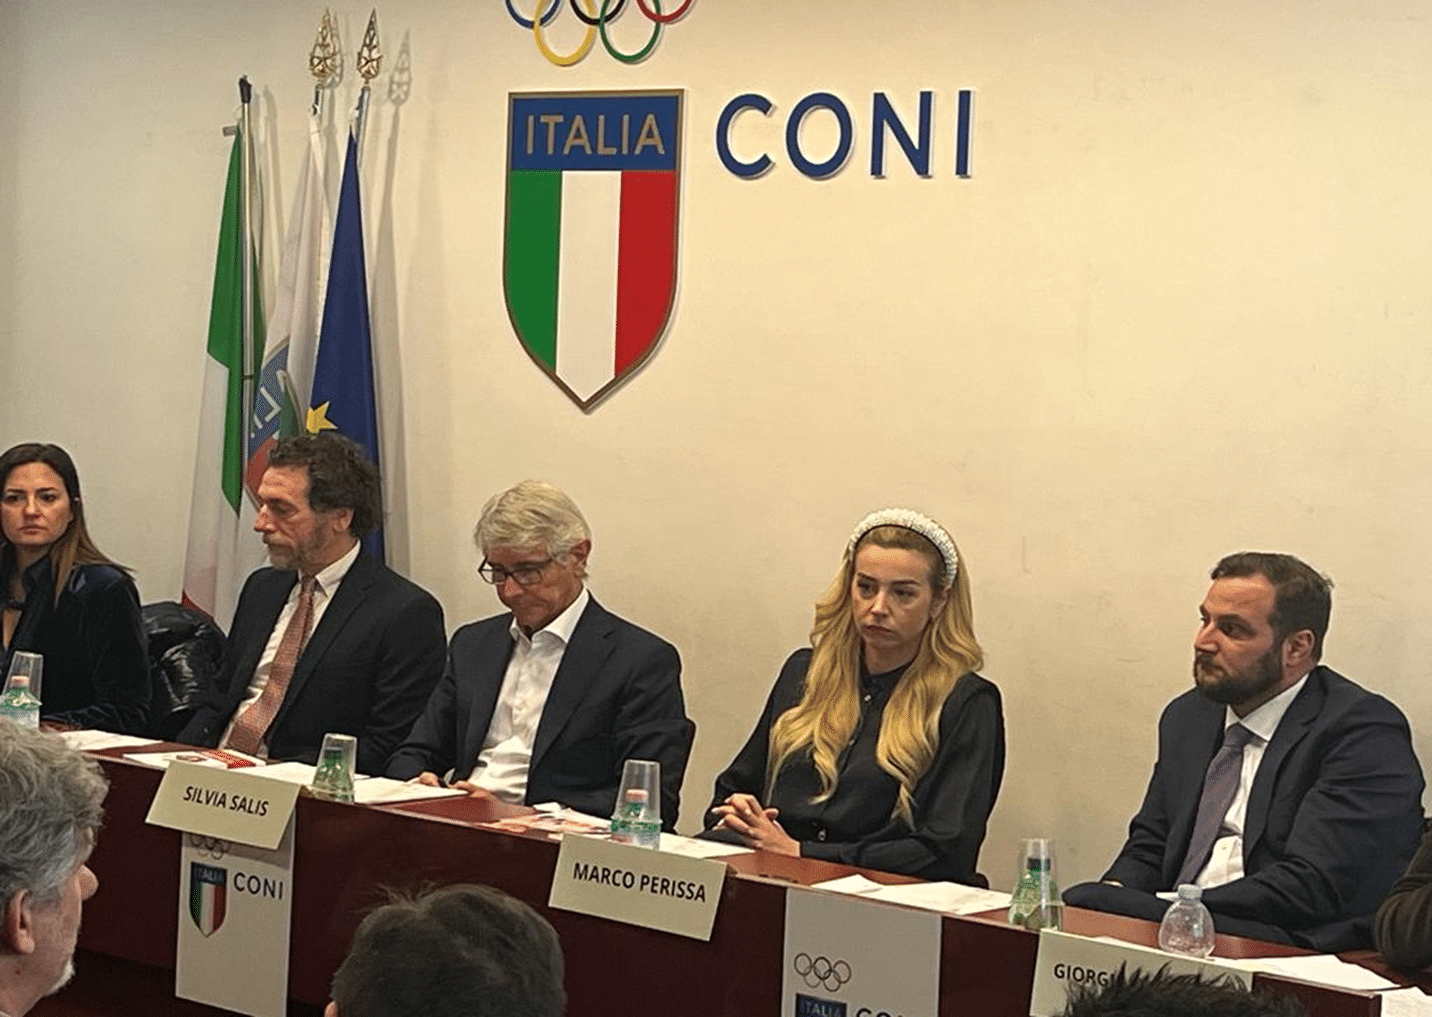 Certificación Quaser: el Comité Olímpico Nacional Italiano confirma su interés por la certificación antiacoso para las disciplinas deportivas